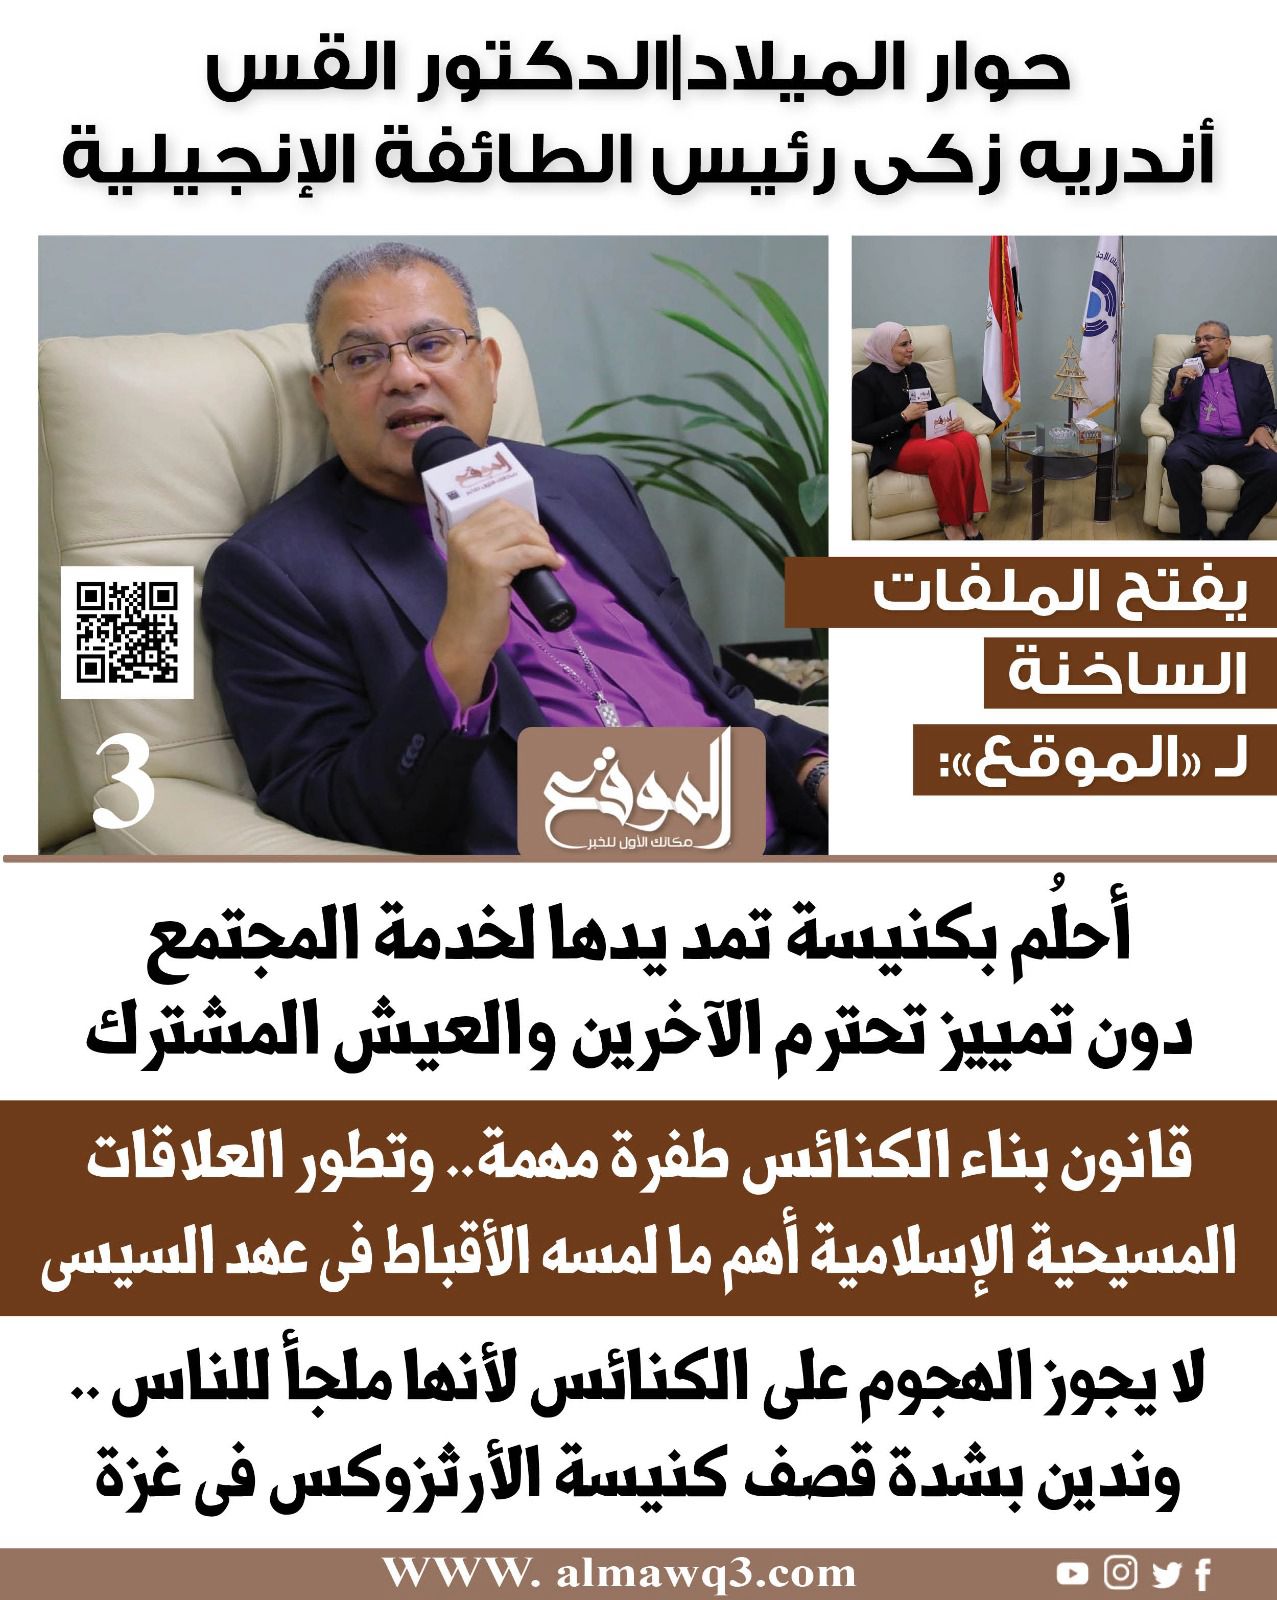 الدكتور القس أندرية زكي رئيس الطائفة الإنجيلية يفتح الملفات الساخنة